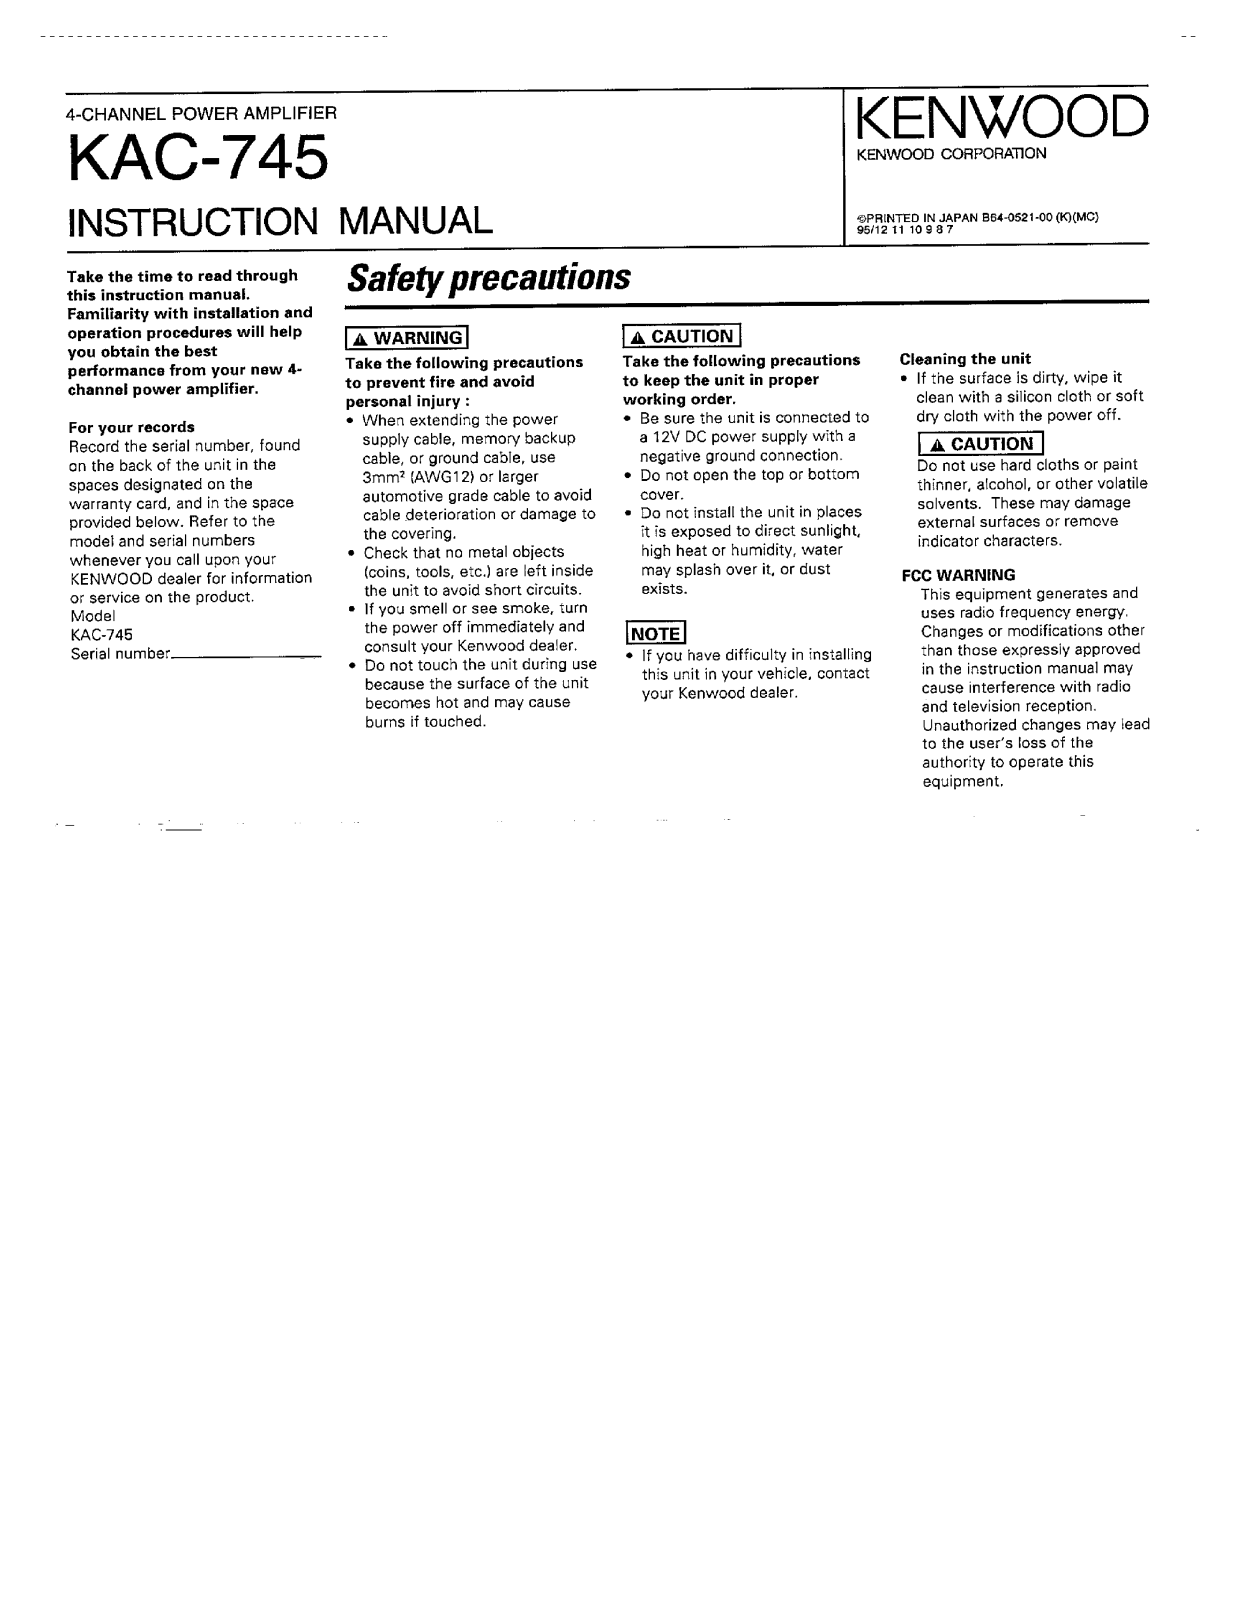 Kenwood KAC-745 Owner's Manual